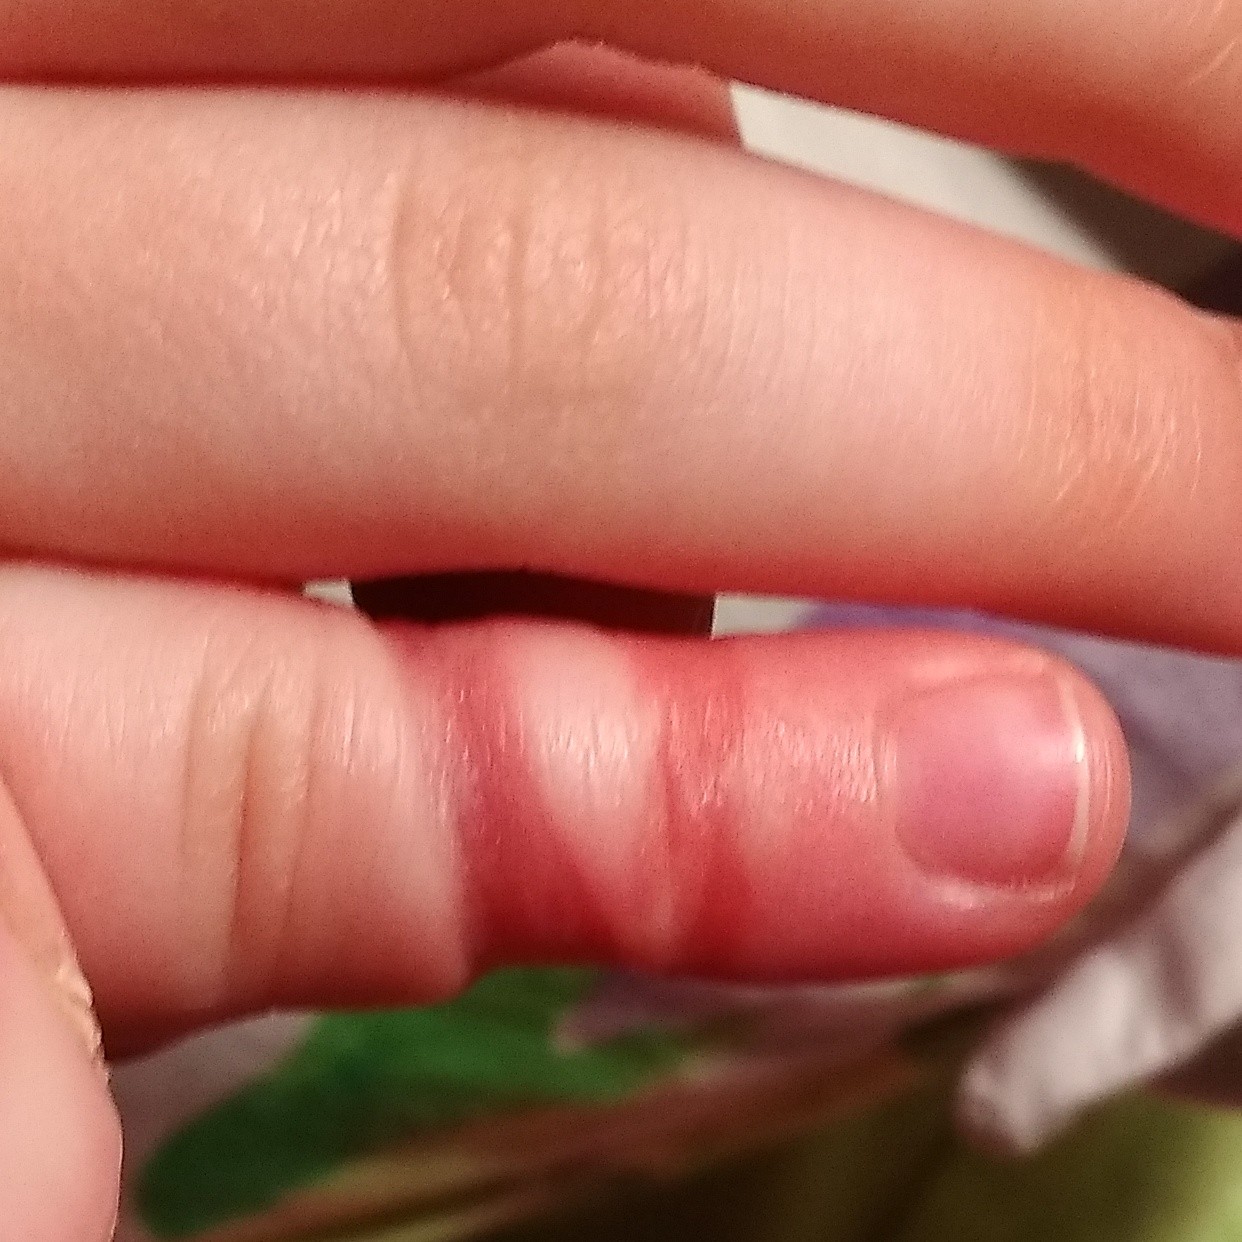 Волос на пальце у младенца